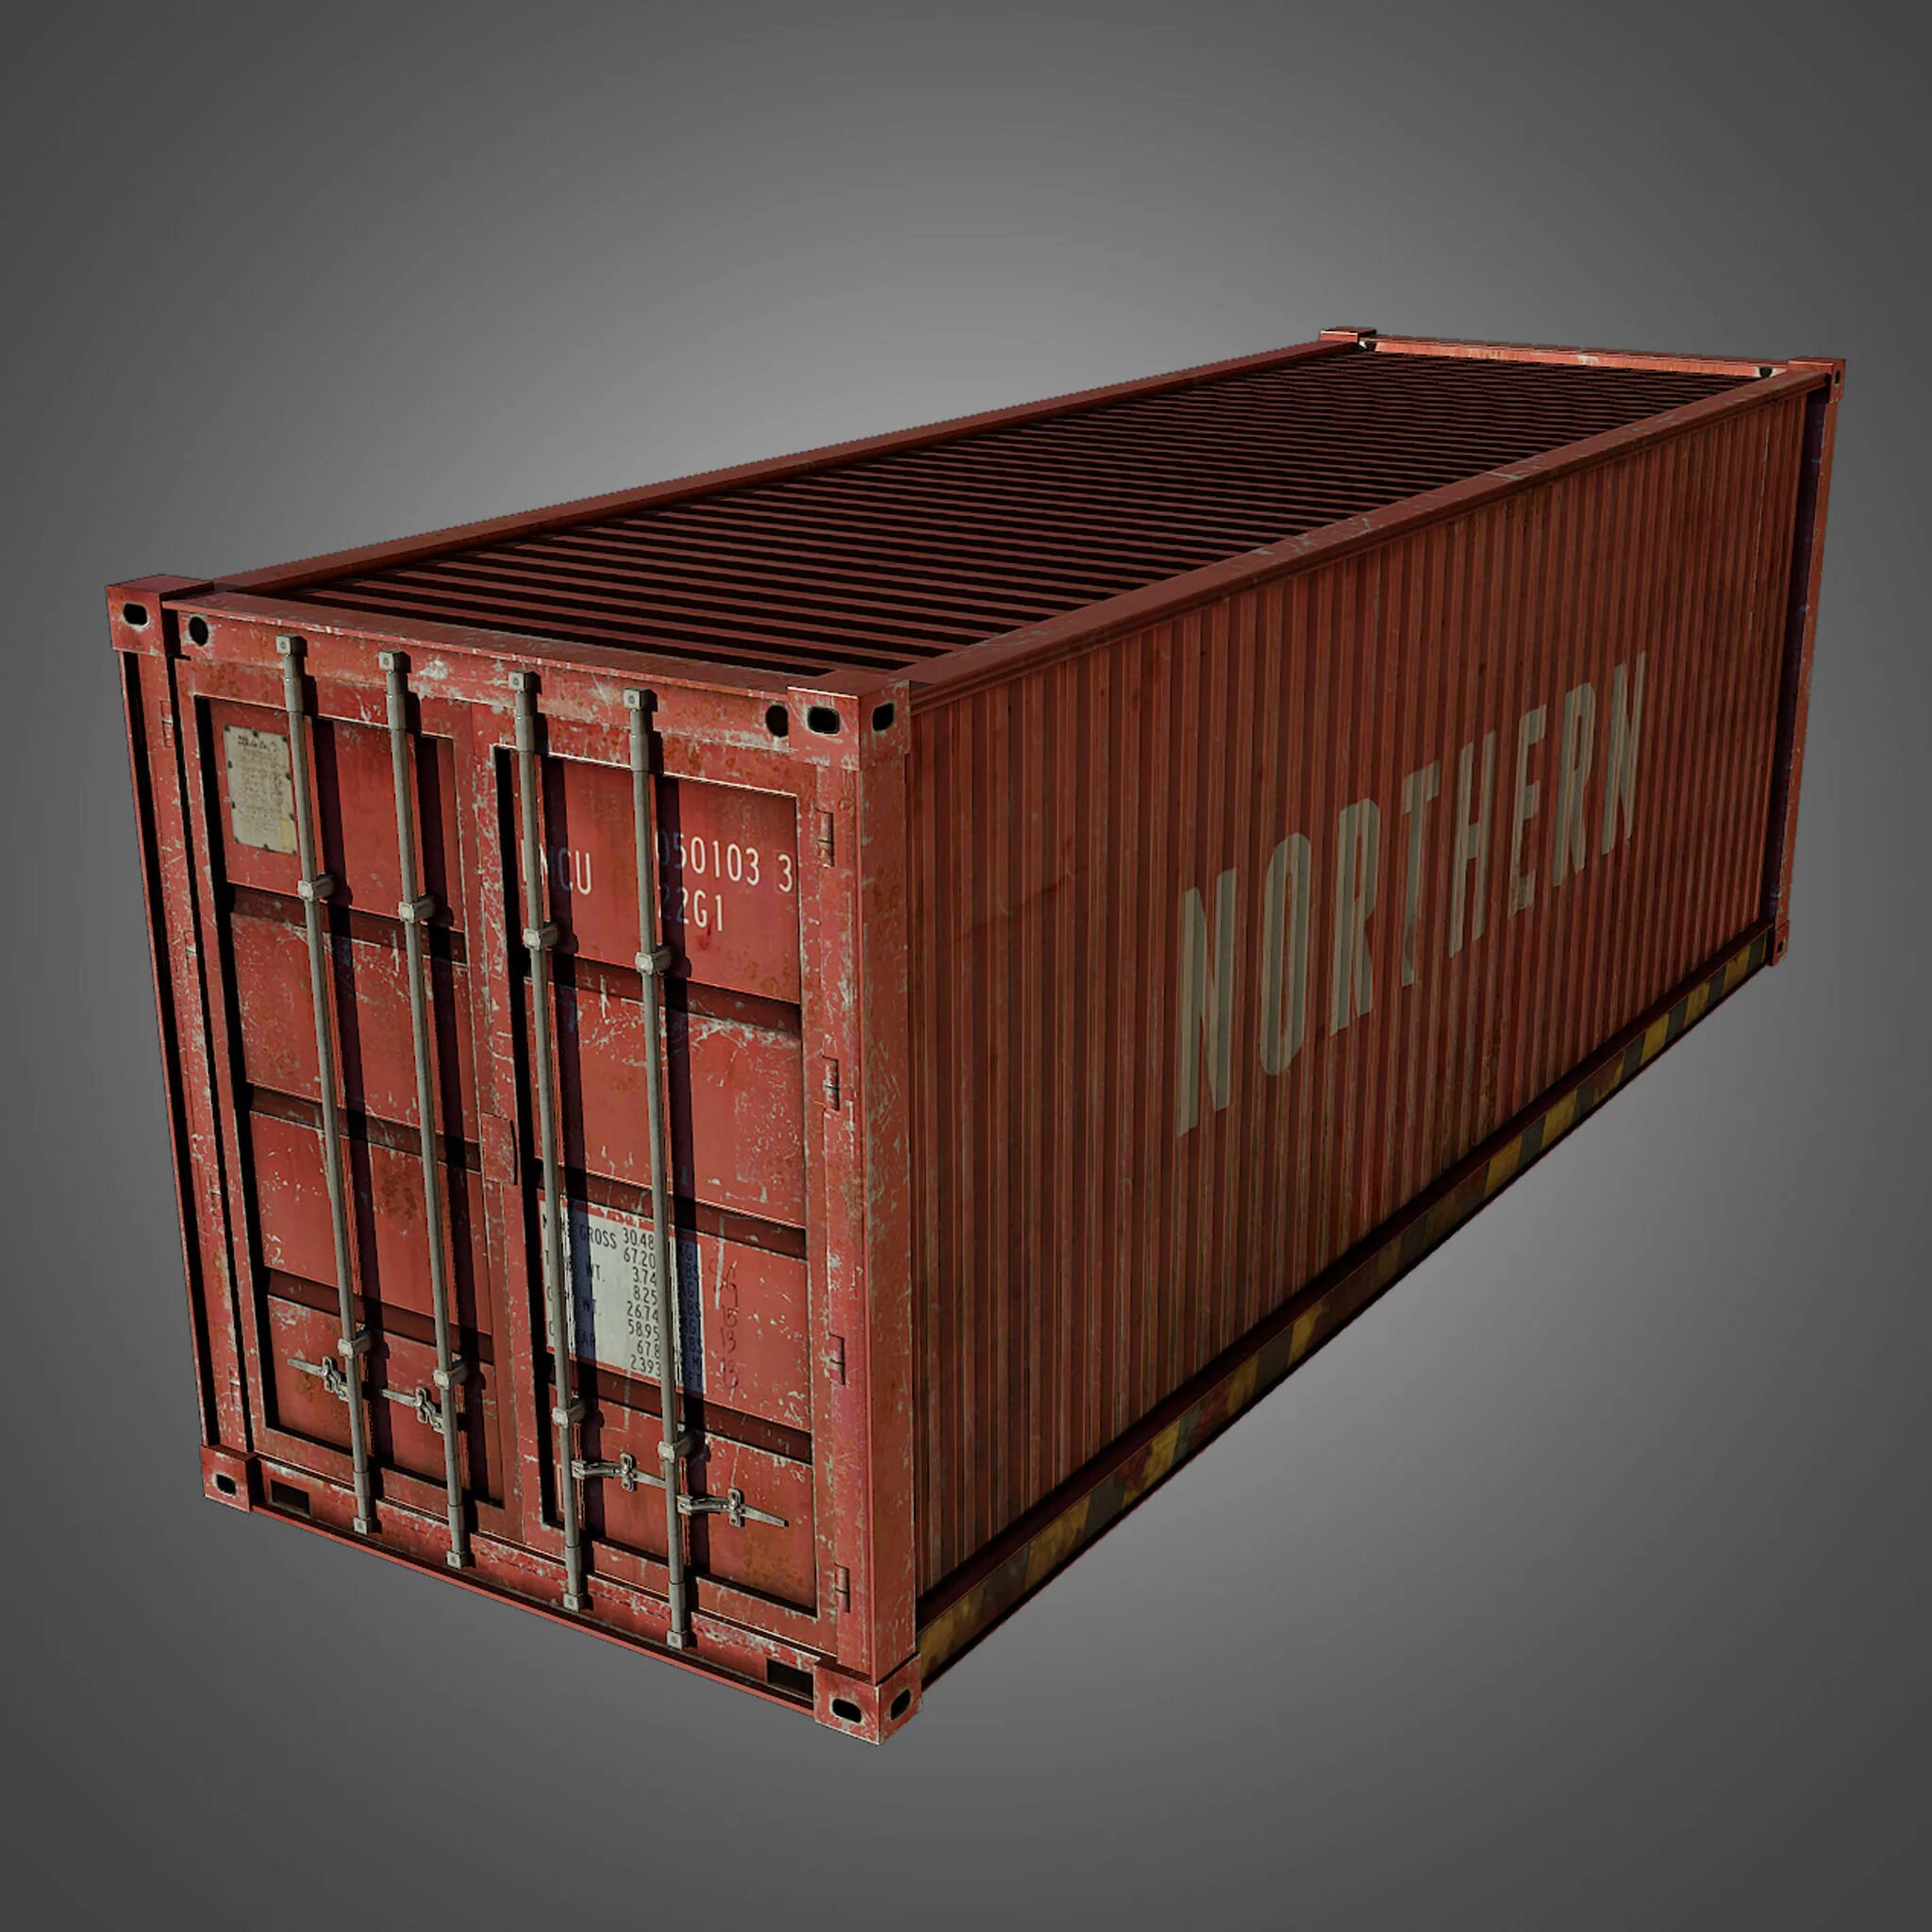 Cargo 3. Карго контейнер. Кубо-контейнер 1т. Контрейлер. Железный контейнер.